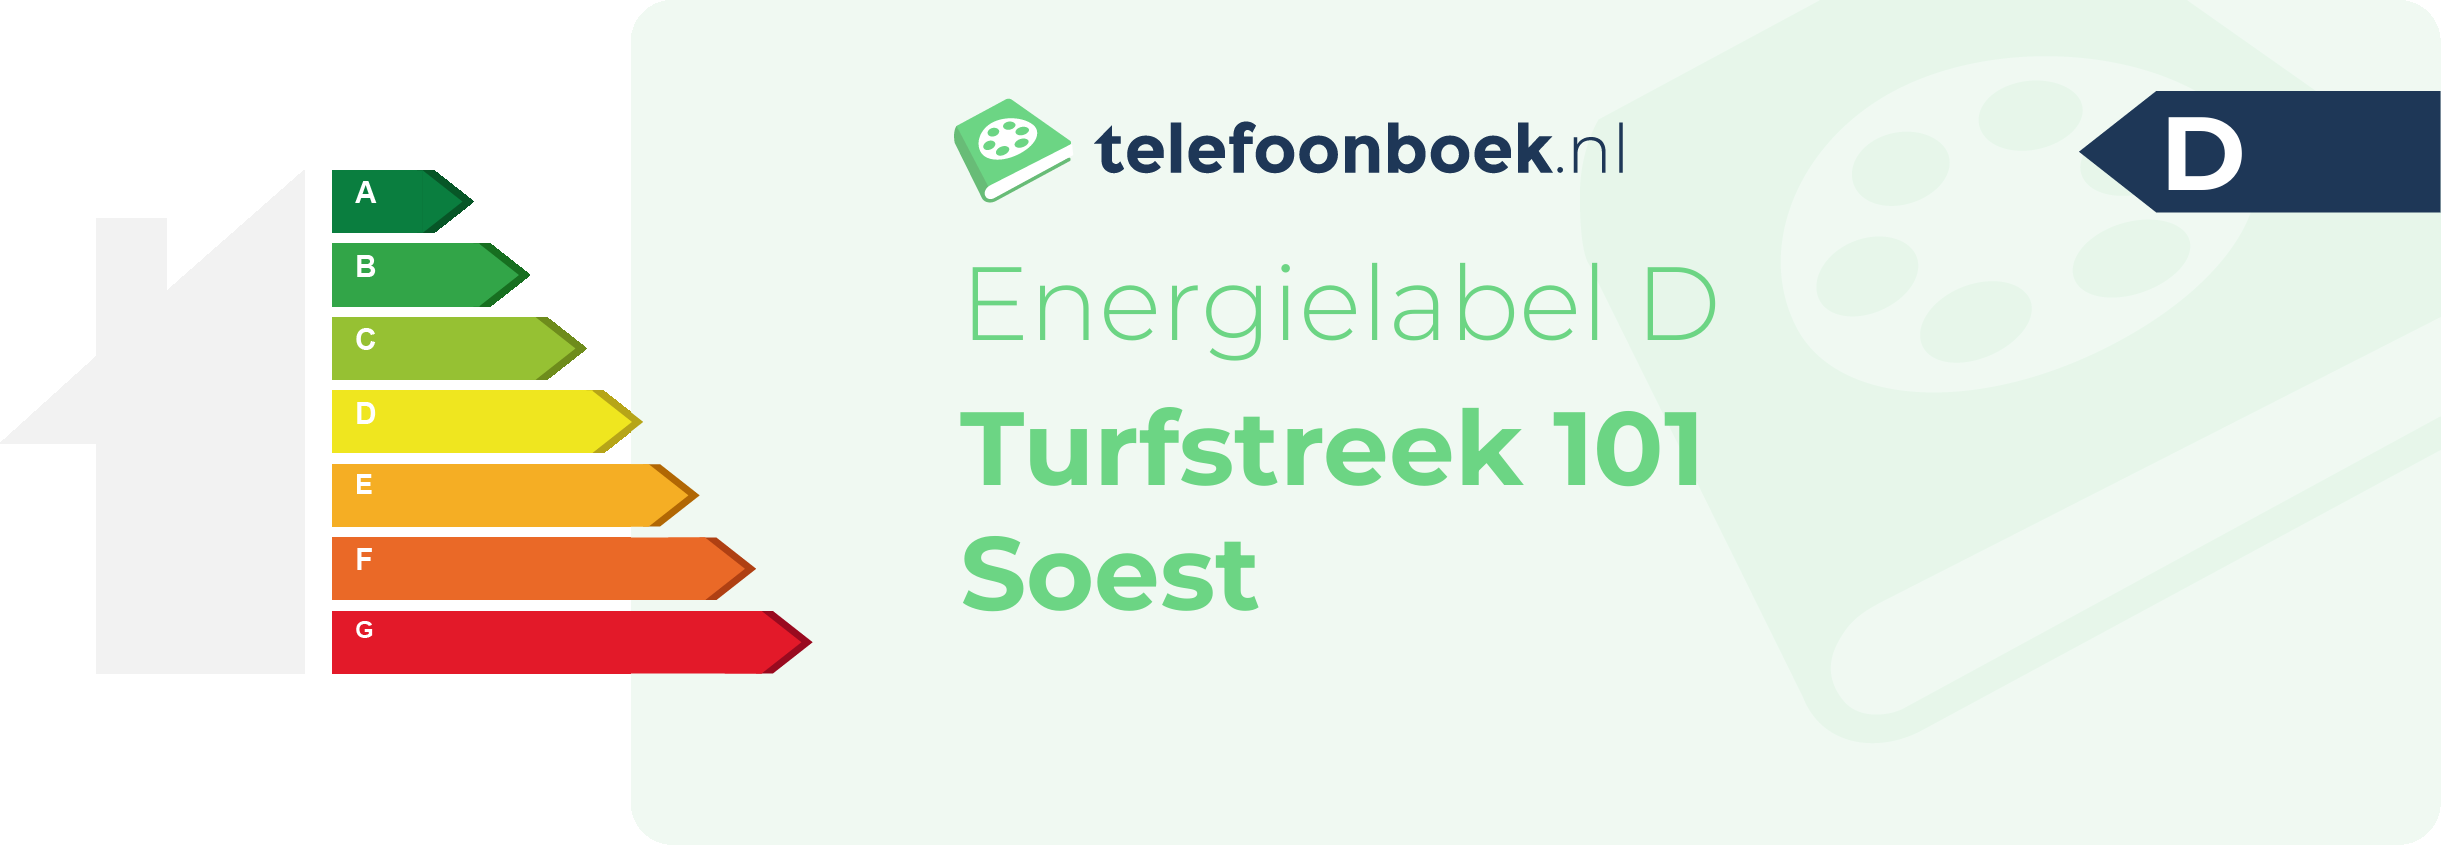 Energielabel Turfstreek 101 Soest